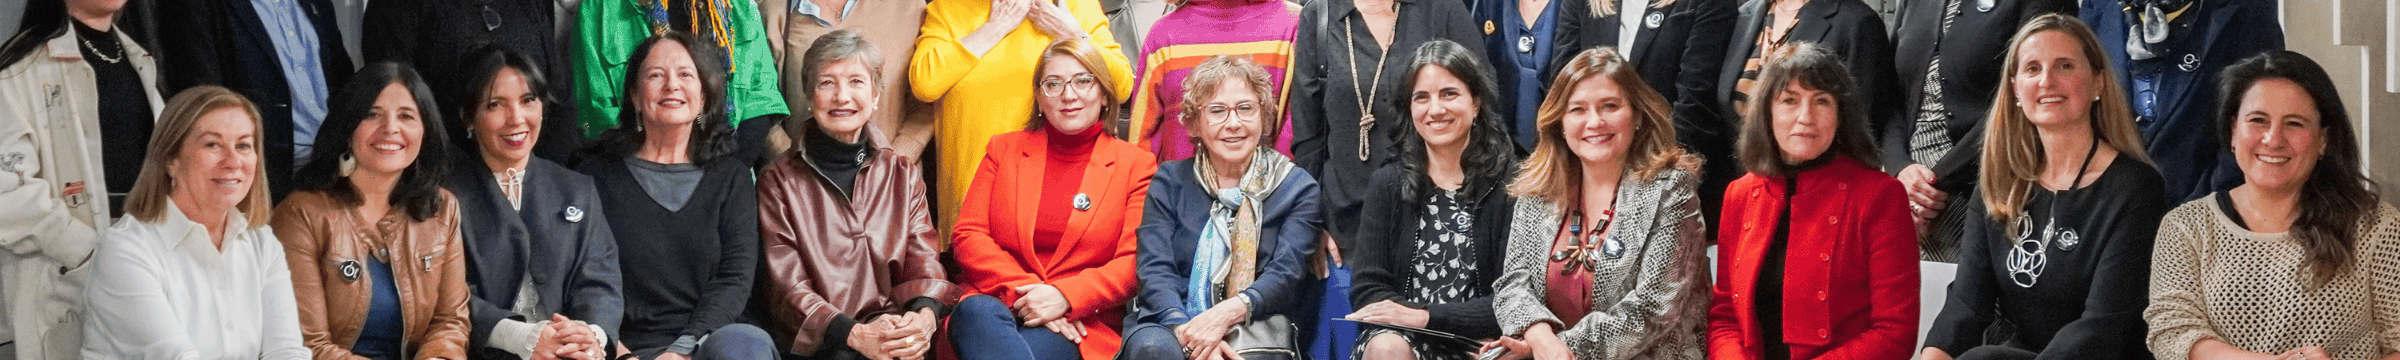 grupo de mujeres que forman parte del consejo consultivo